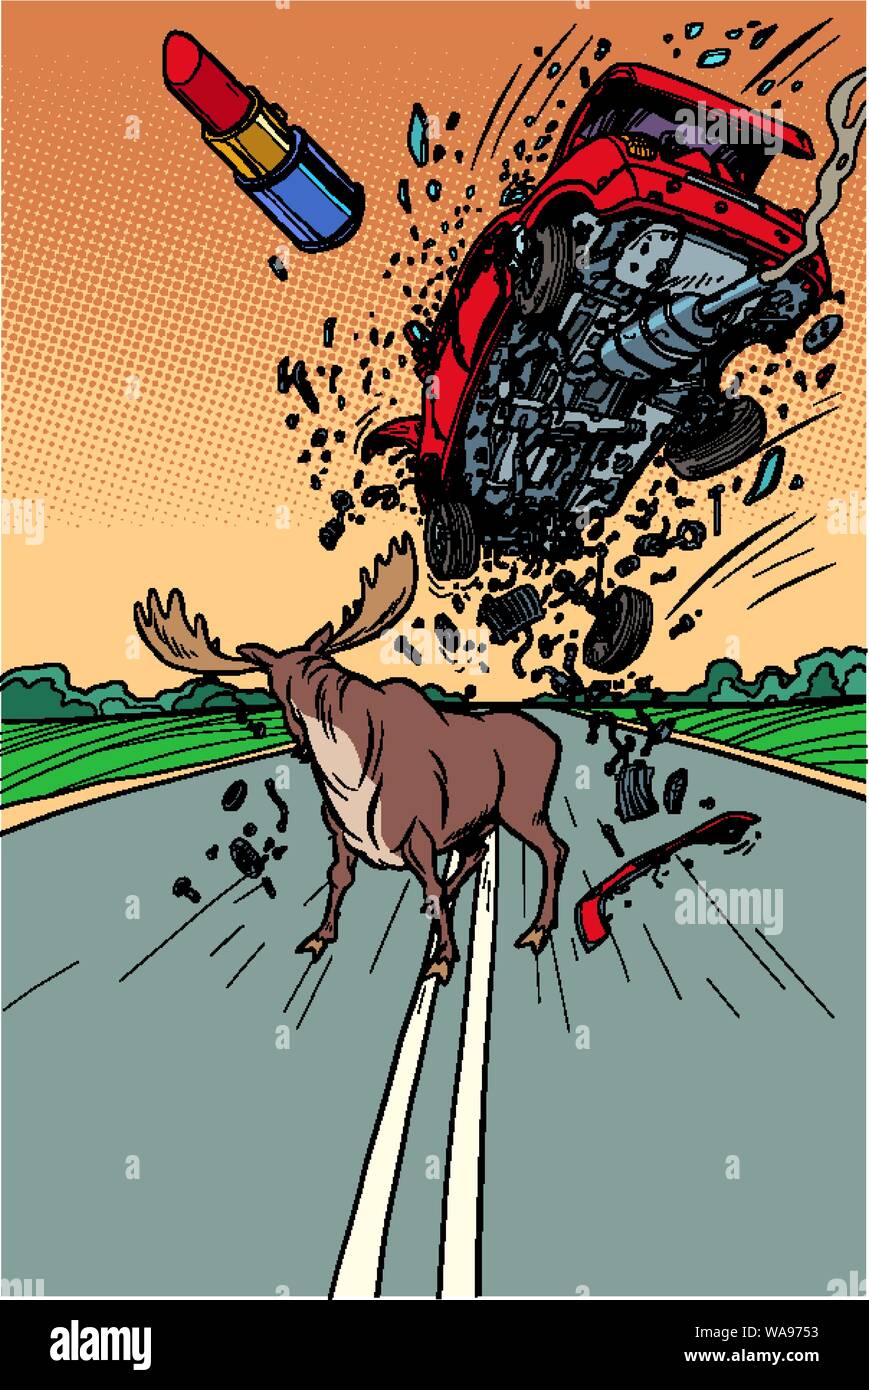 Pericolo su strada di animali selvatici le alci e l'auto. Fumetto cartoon arte pop retrò illustrazione vettoriale disegno Illustrazione Vettoriale